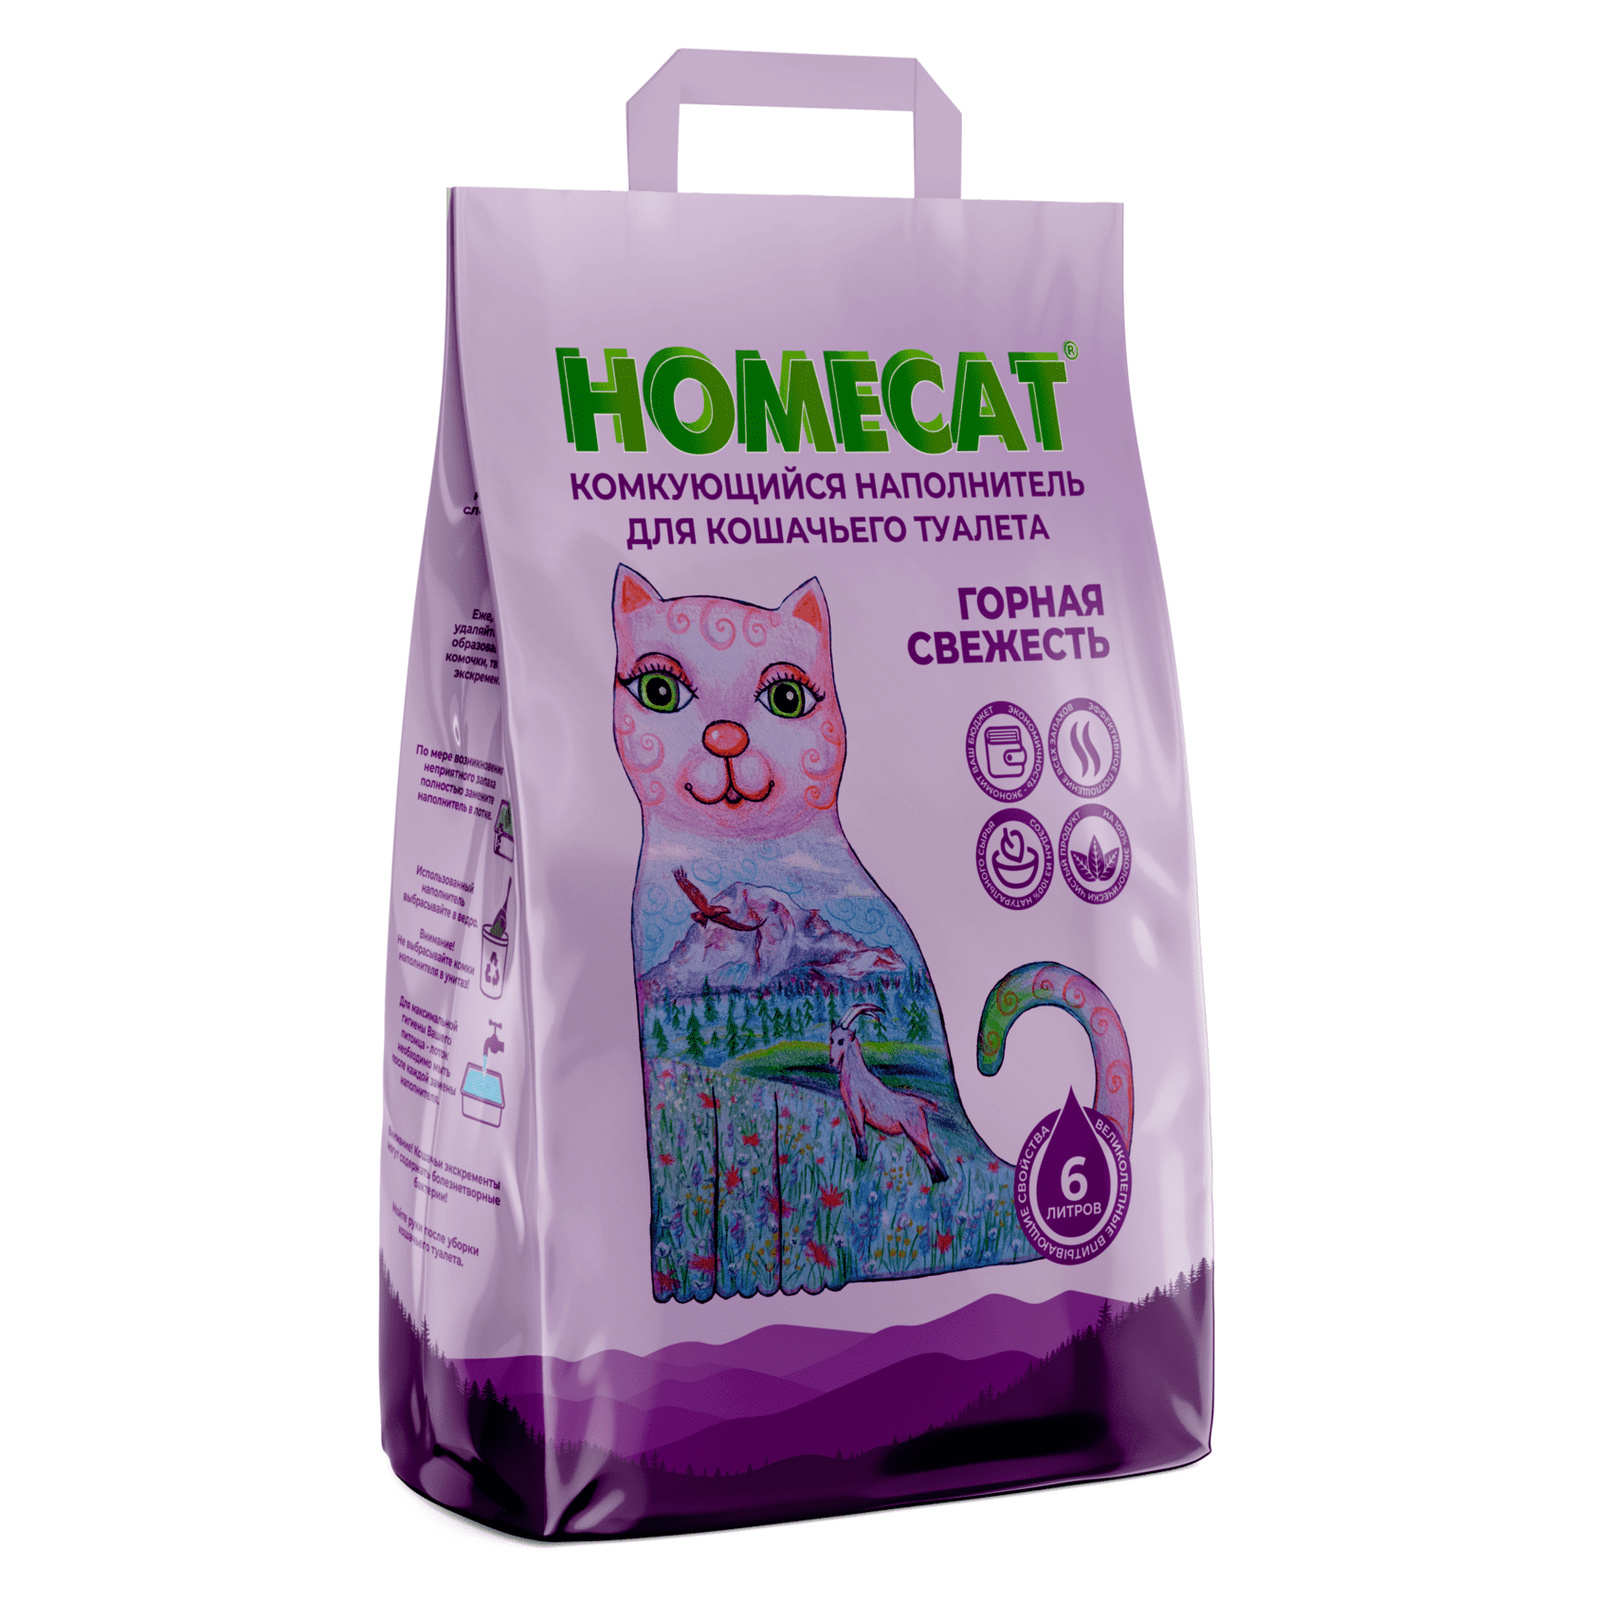 Homecat наполнитель Homecat наполнитель комкующийся наполнитель (10 кг) homecat наполнитель homecat наполнитель кукурузный комкующийся наполнитель эколайн 6 л 2 81 кг